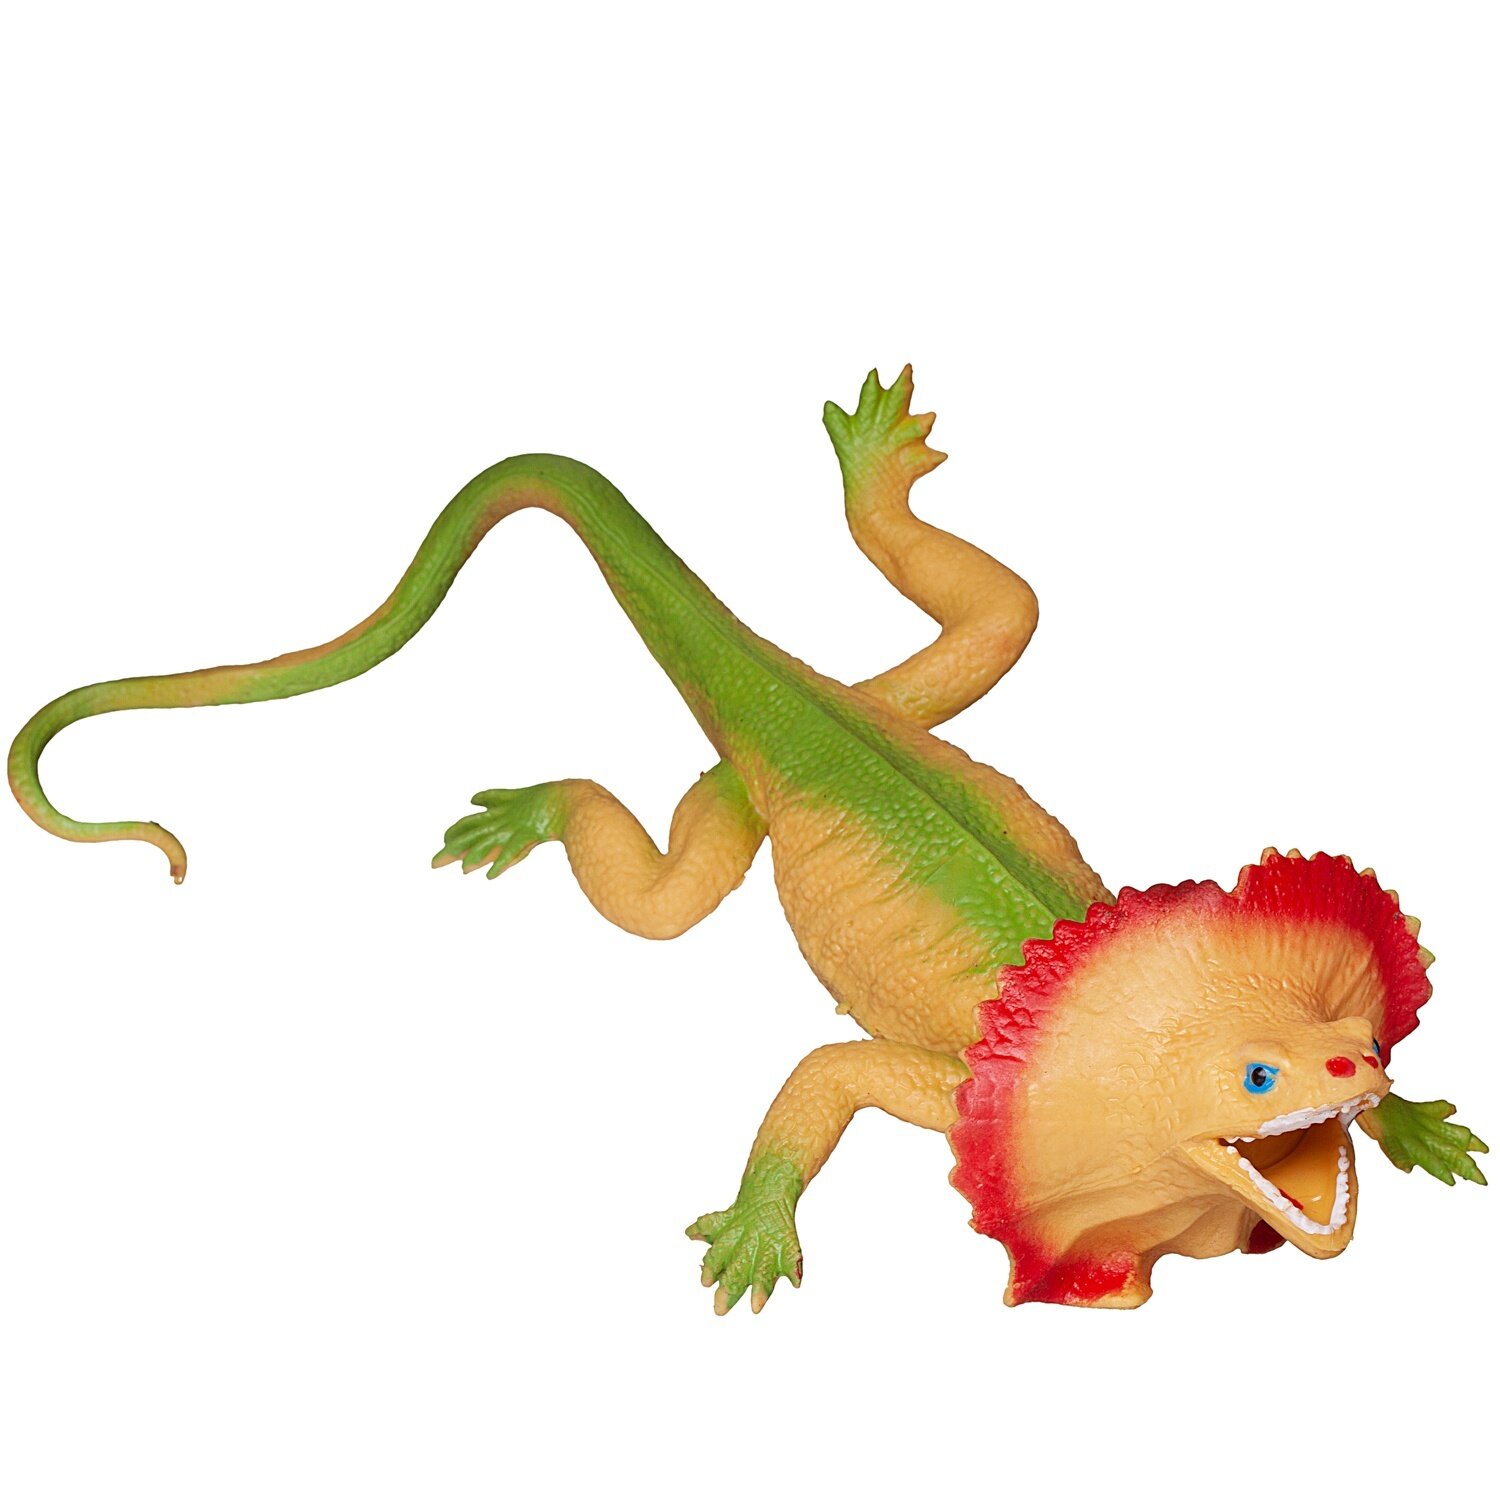 Фигурка Abtoys Юный натуралист: Рептилии, Ящерица ярко-зеленая с воротником, резиновая (PT-01721)